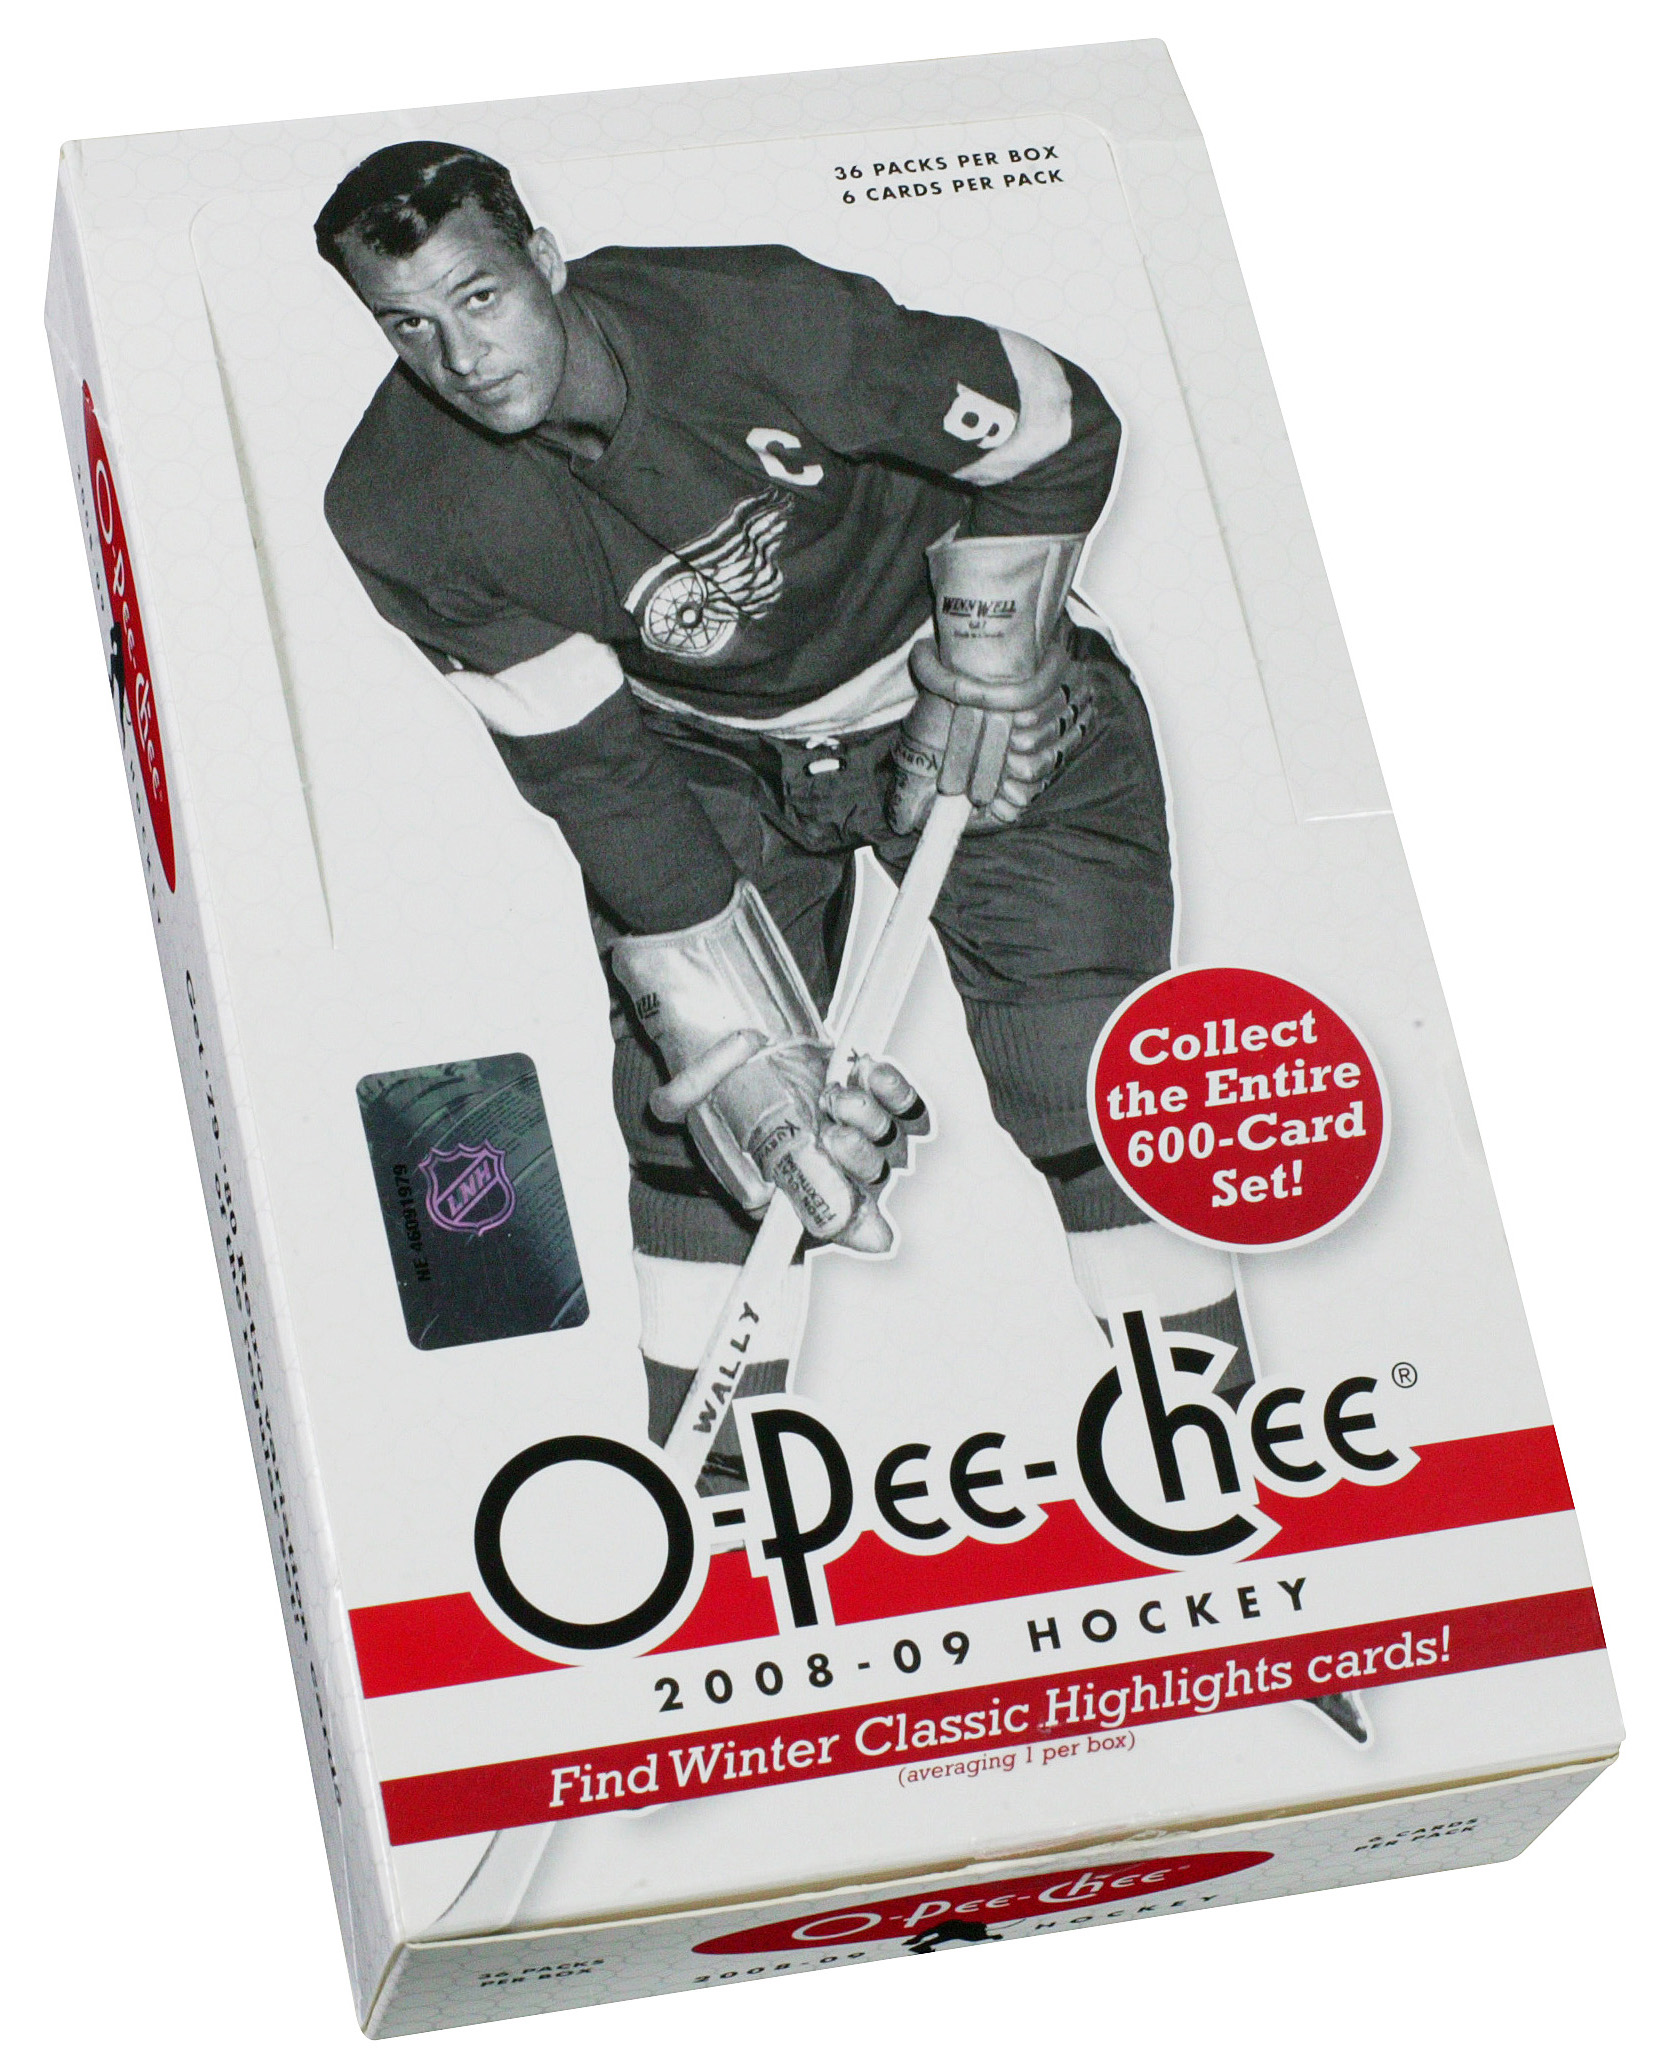 2008-09 O-Pee-Chee Hockey Hobby Box card image